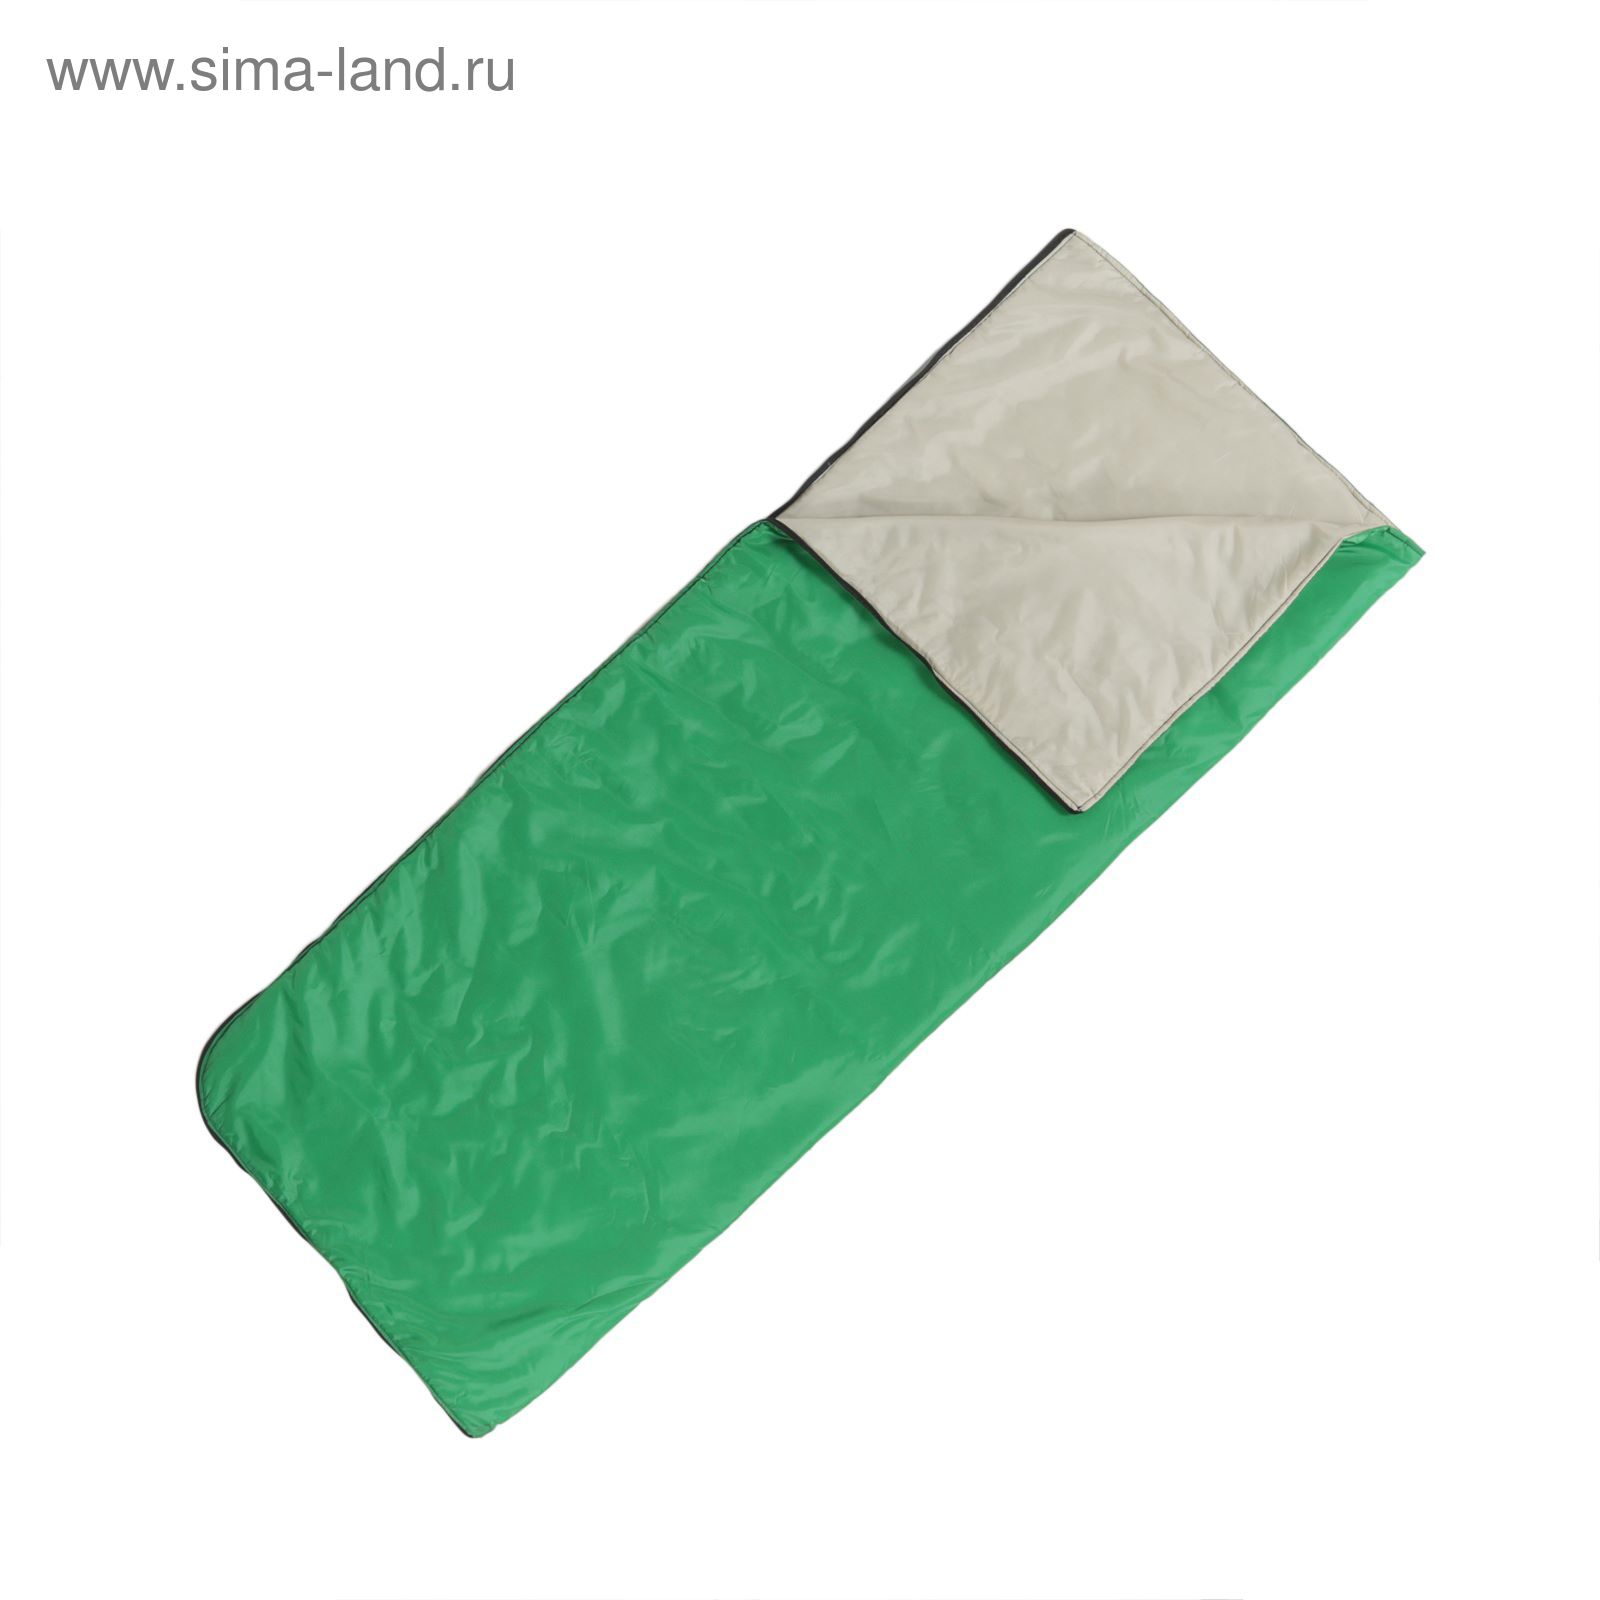 Спальный мешок-одеяло "Эконом+", 2-х слойный, размер 185 х 70 см, цвет микс